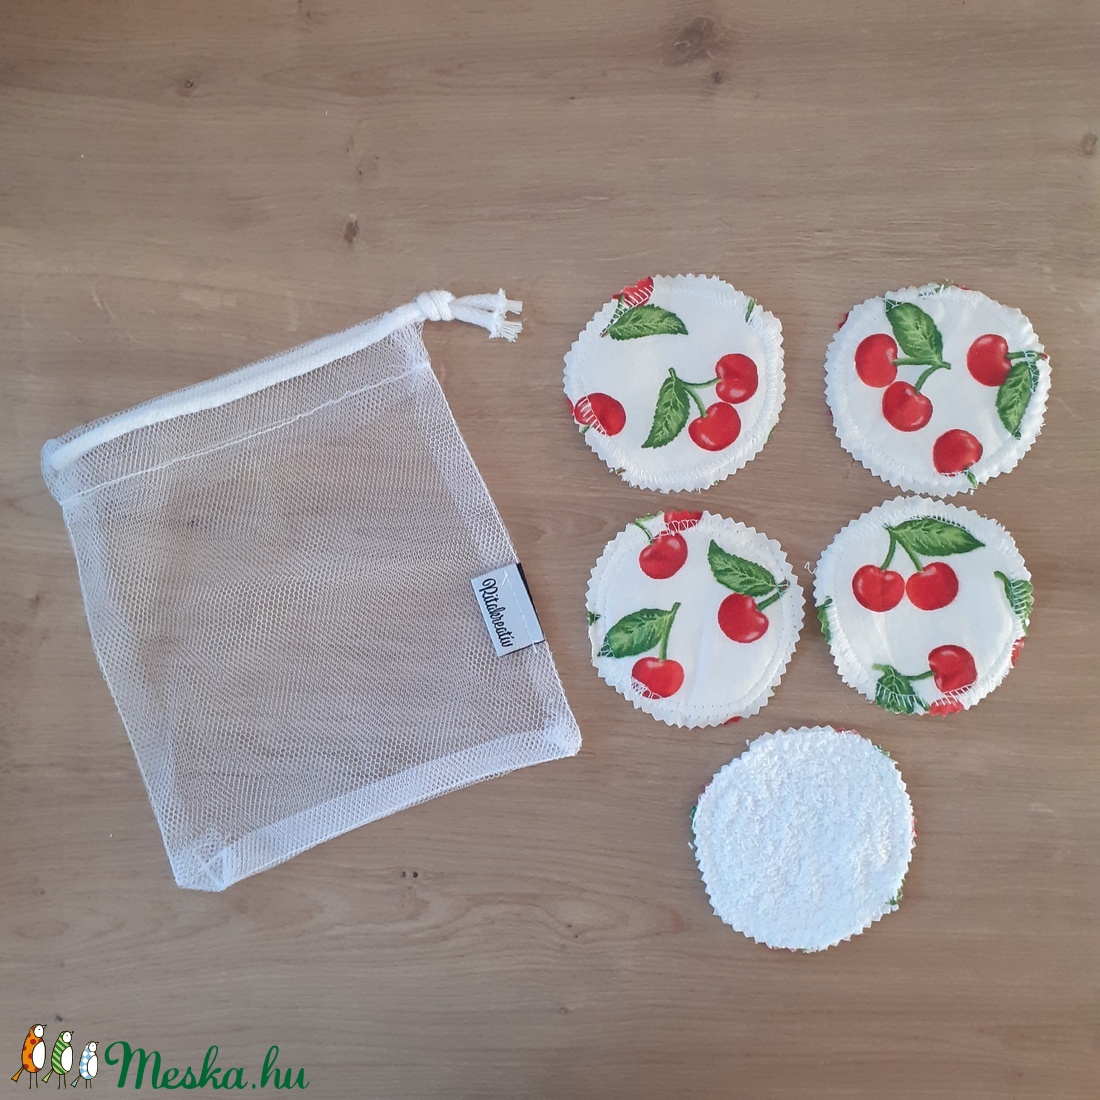 Arctisztító korong szett (5 db) ajándék mosózsákkal, cseresznye - sminklemosó, arclemosó, kozmetikai párna - szépségápolás - arcápolás - arctisztító korong - Meska.hu